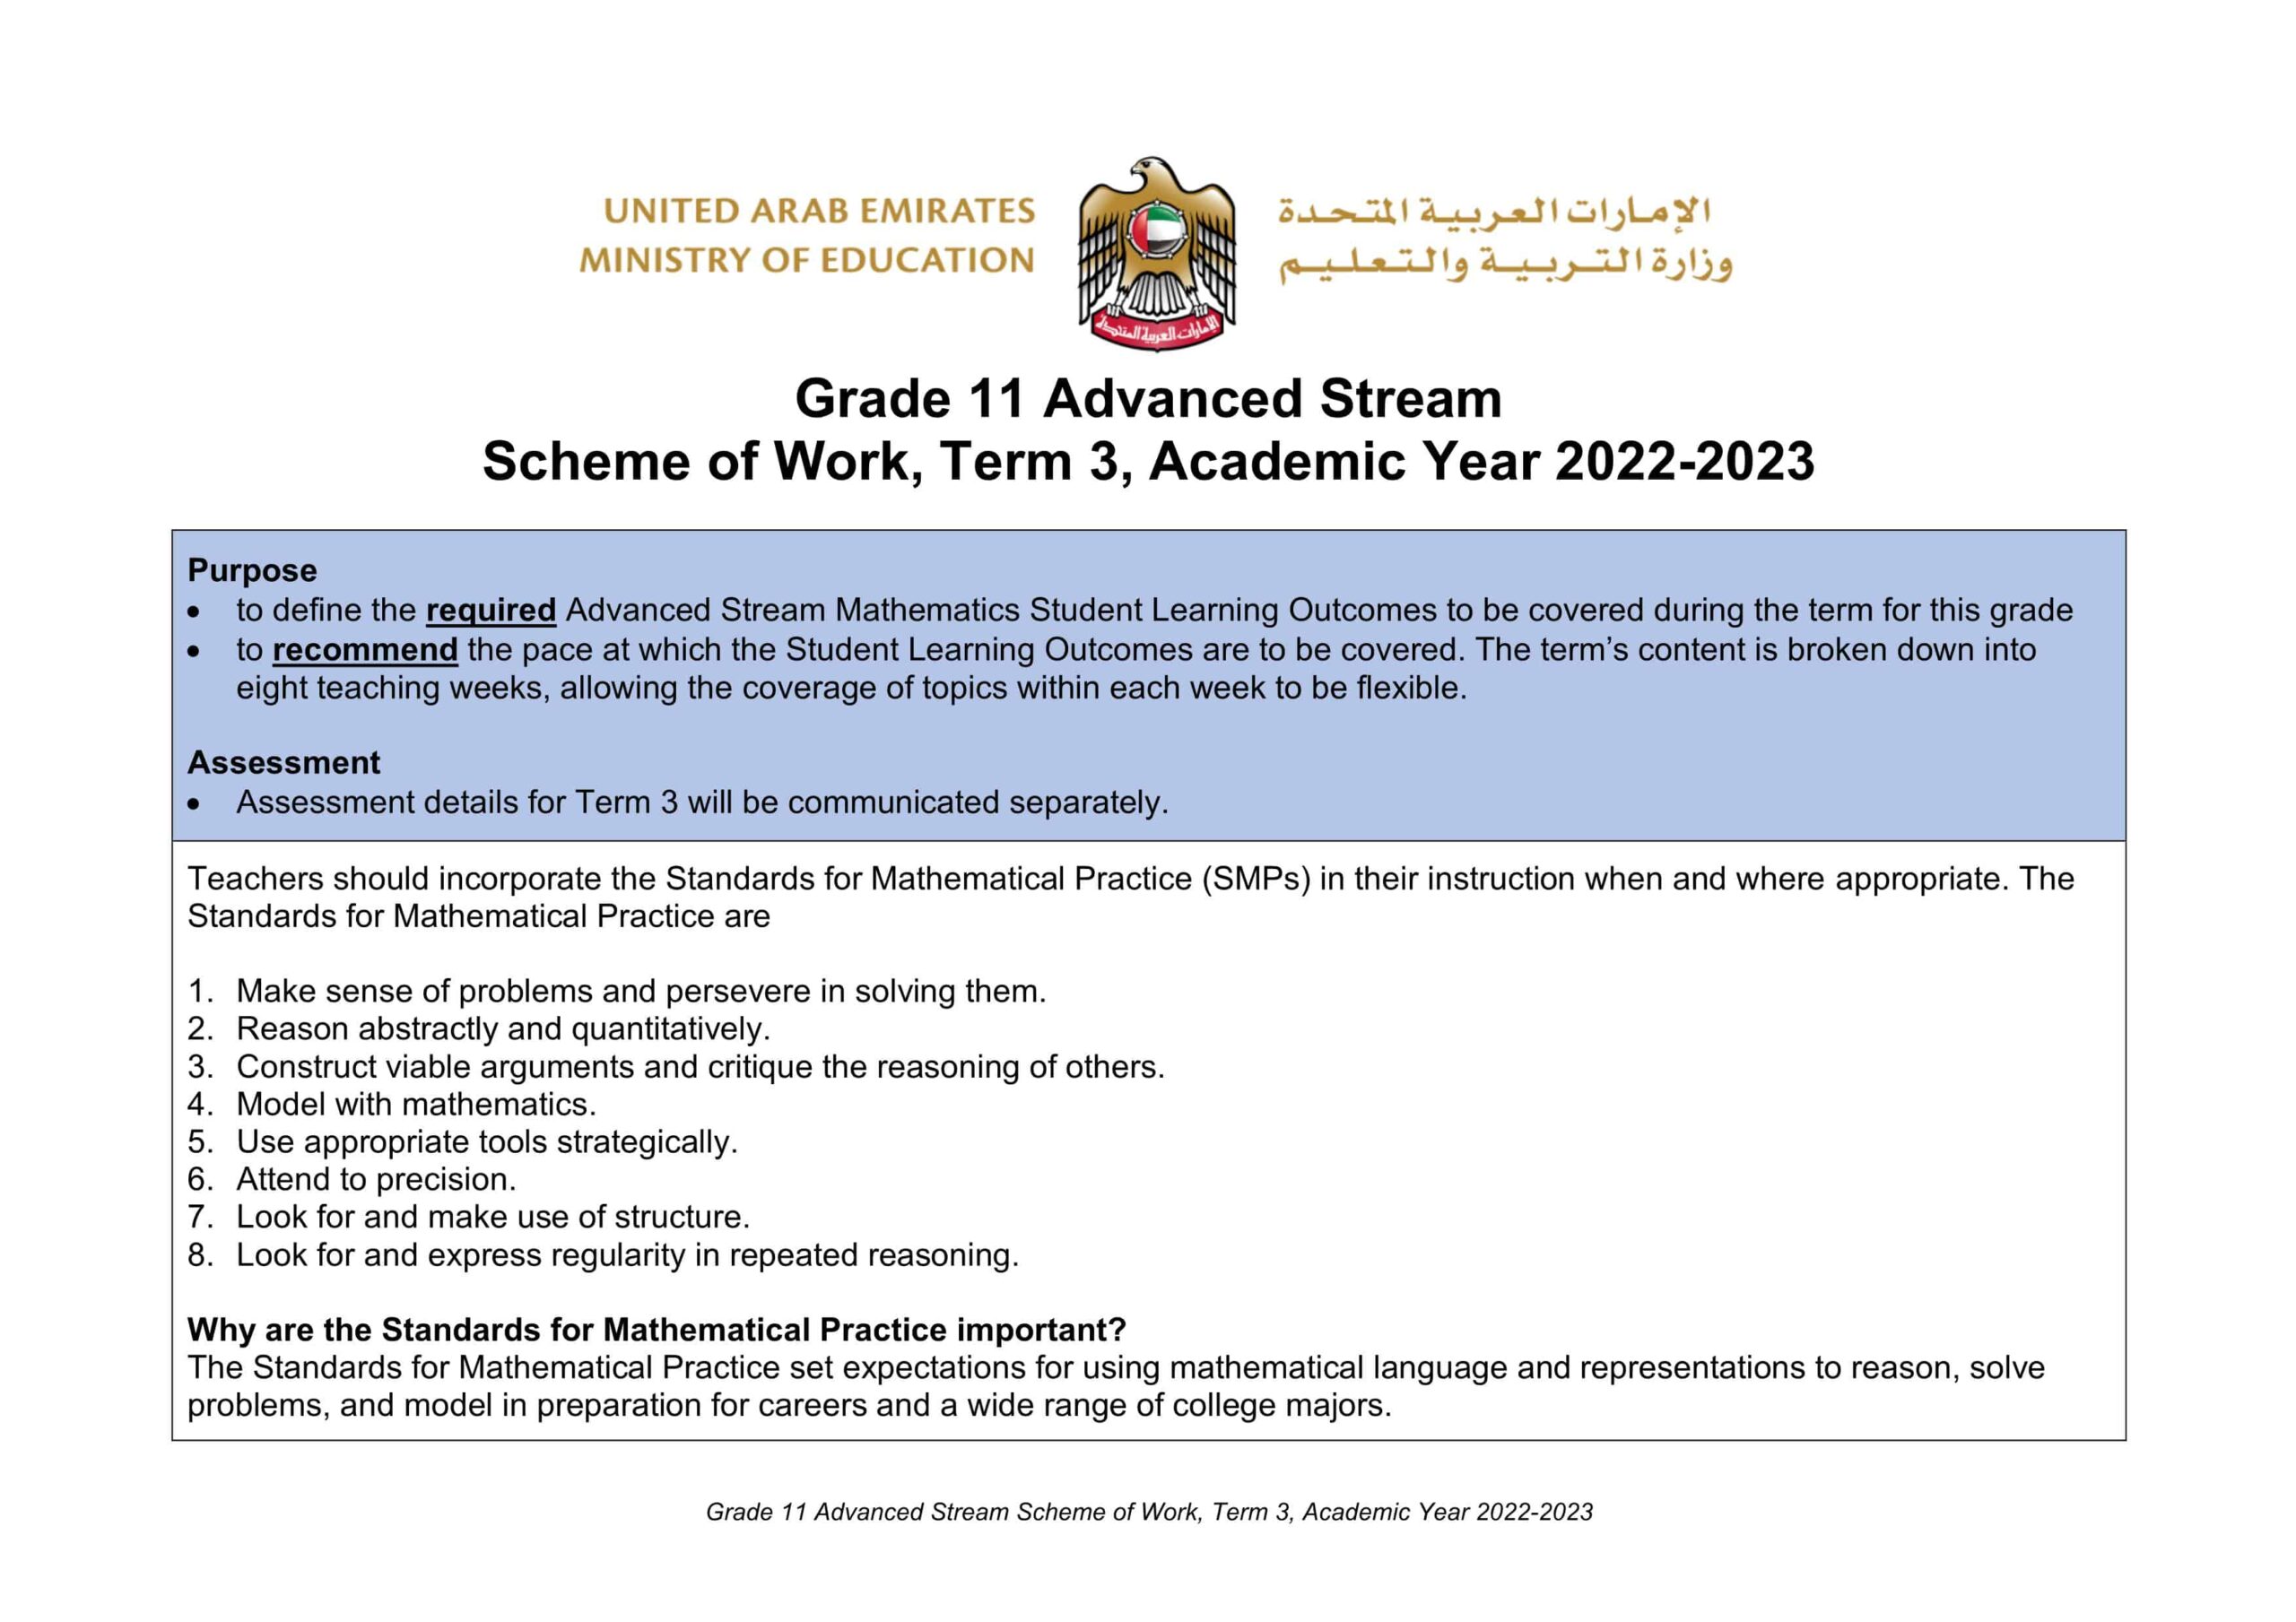 الخطة الفصلية الرياضيات المتكاملة الصف الحادي عشر متقدم الفصل الدراسي الثالث 2022-2023